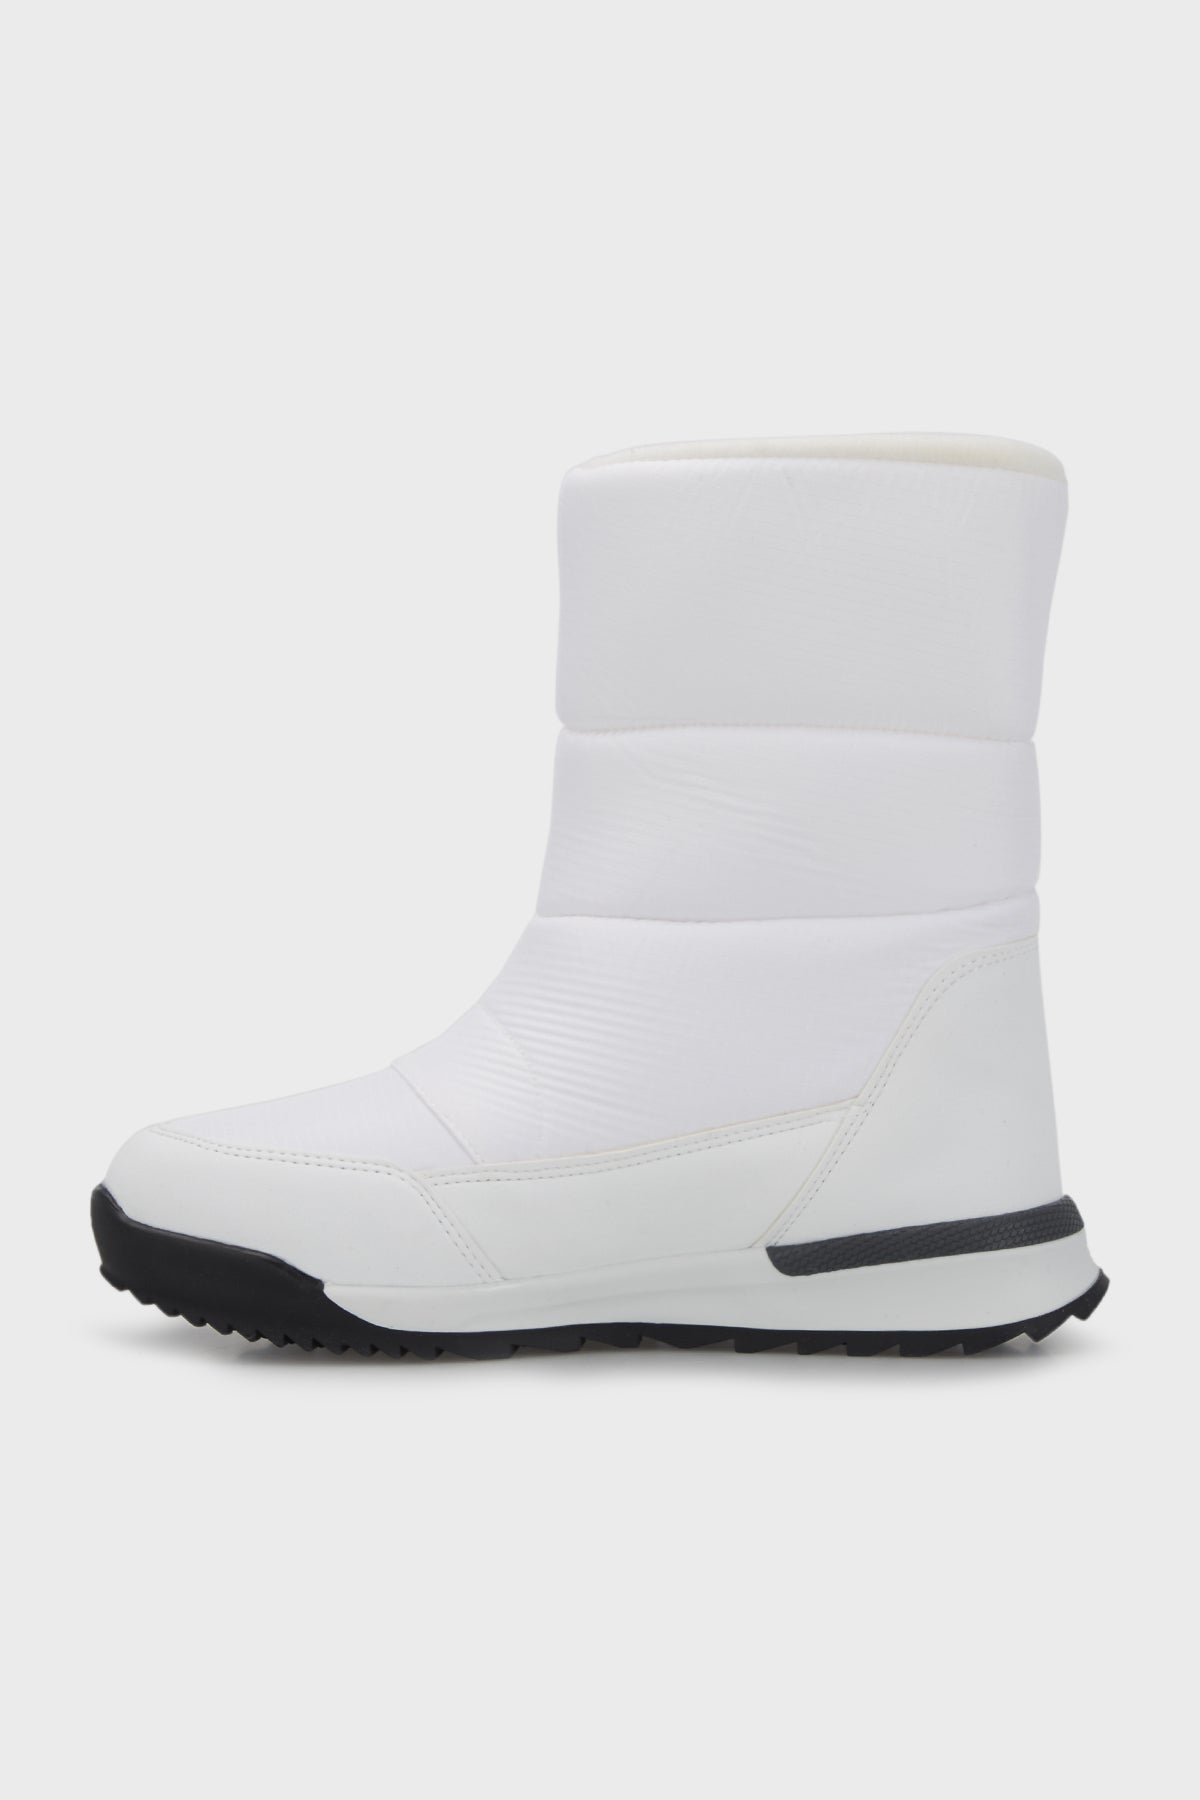 US Polo Assn Outdoor Women's Boots CLARK - WHITE